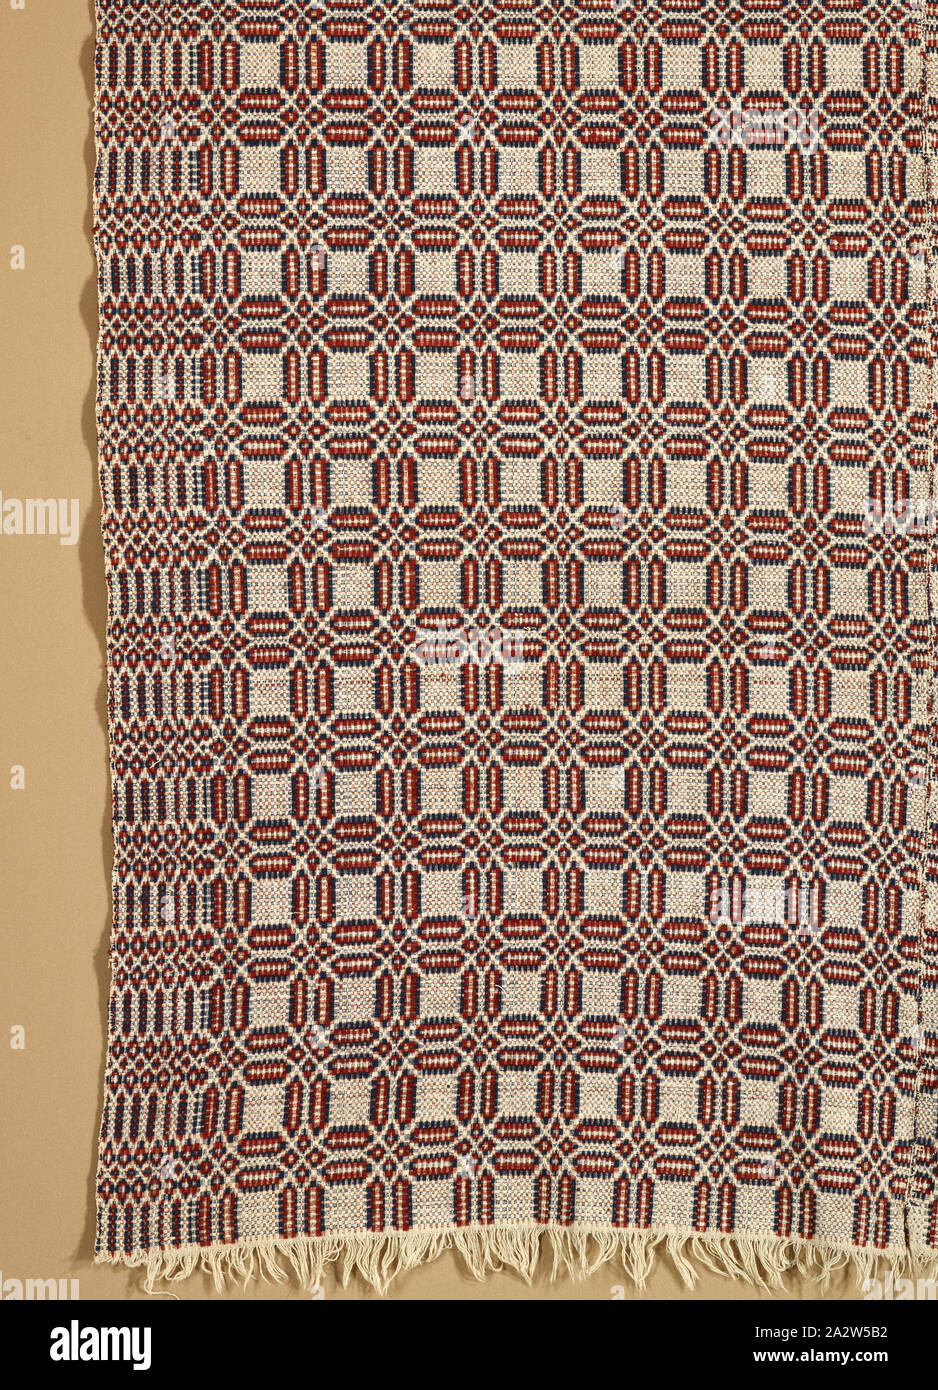 La cama cubierta (excedida coverlet, 1800-1850), desconocida, el algodón y la lana, 95 x 63 in. (Sin margen) de 97 x 63 in. (Con flequillo), American, Textil y Moda artes Foto de stock